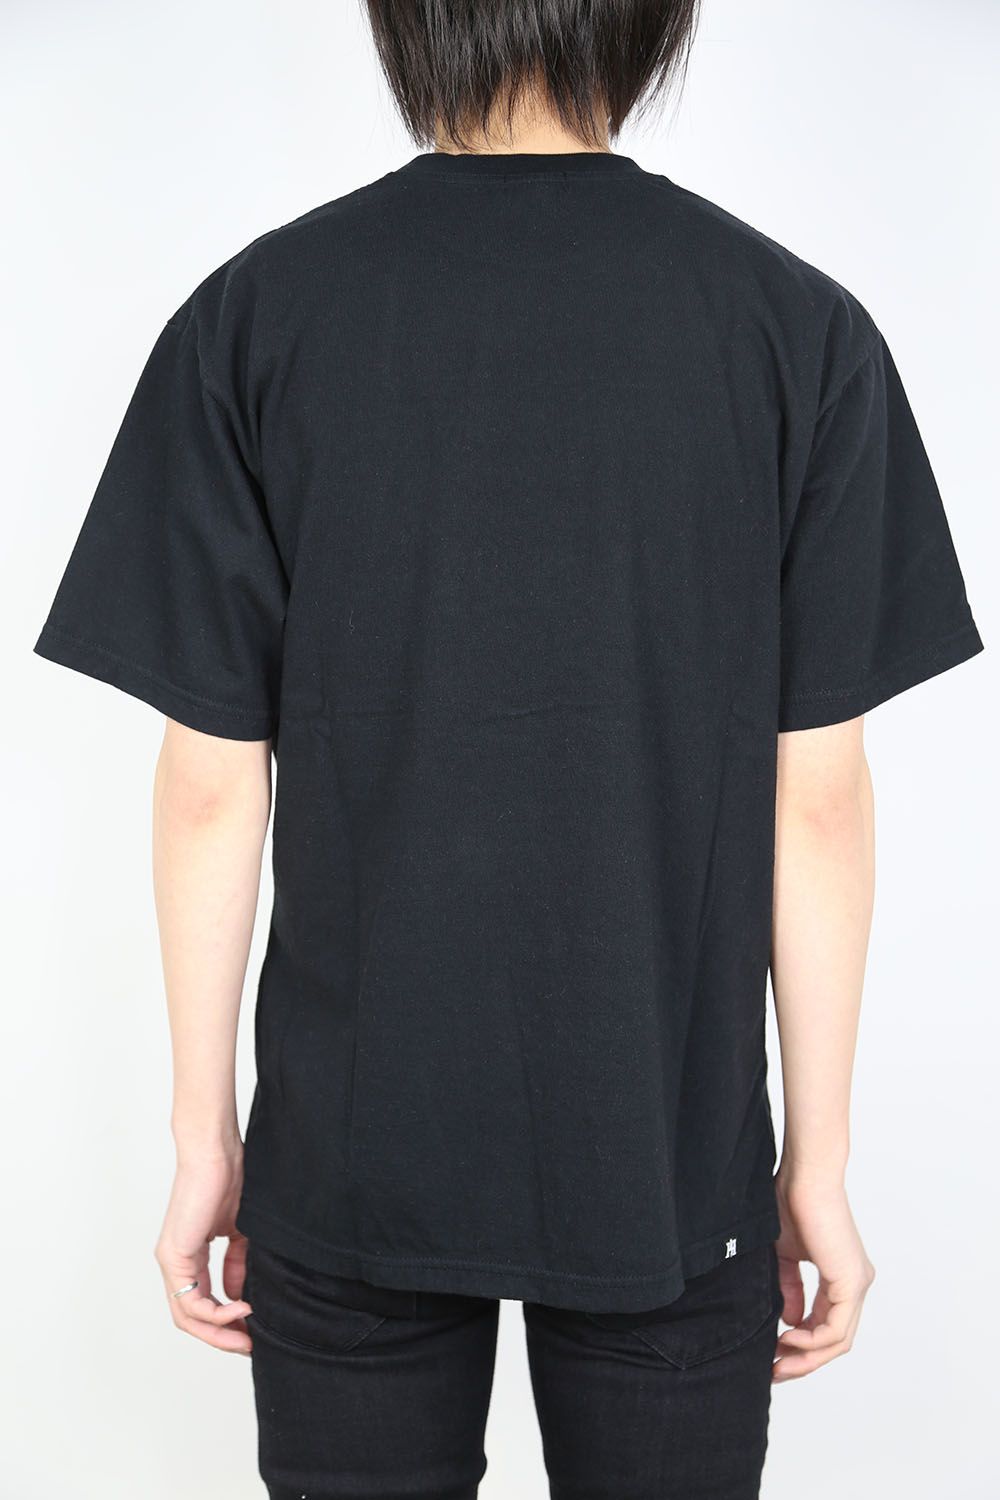 売り大阪STILL CRAZY 刺繍Tシャツ Tシャツ/カットソー(半袖/袖なし)